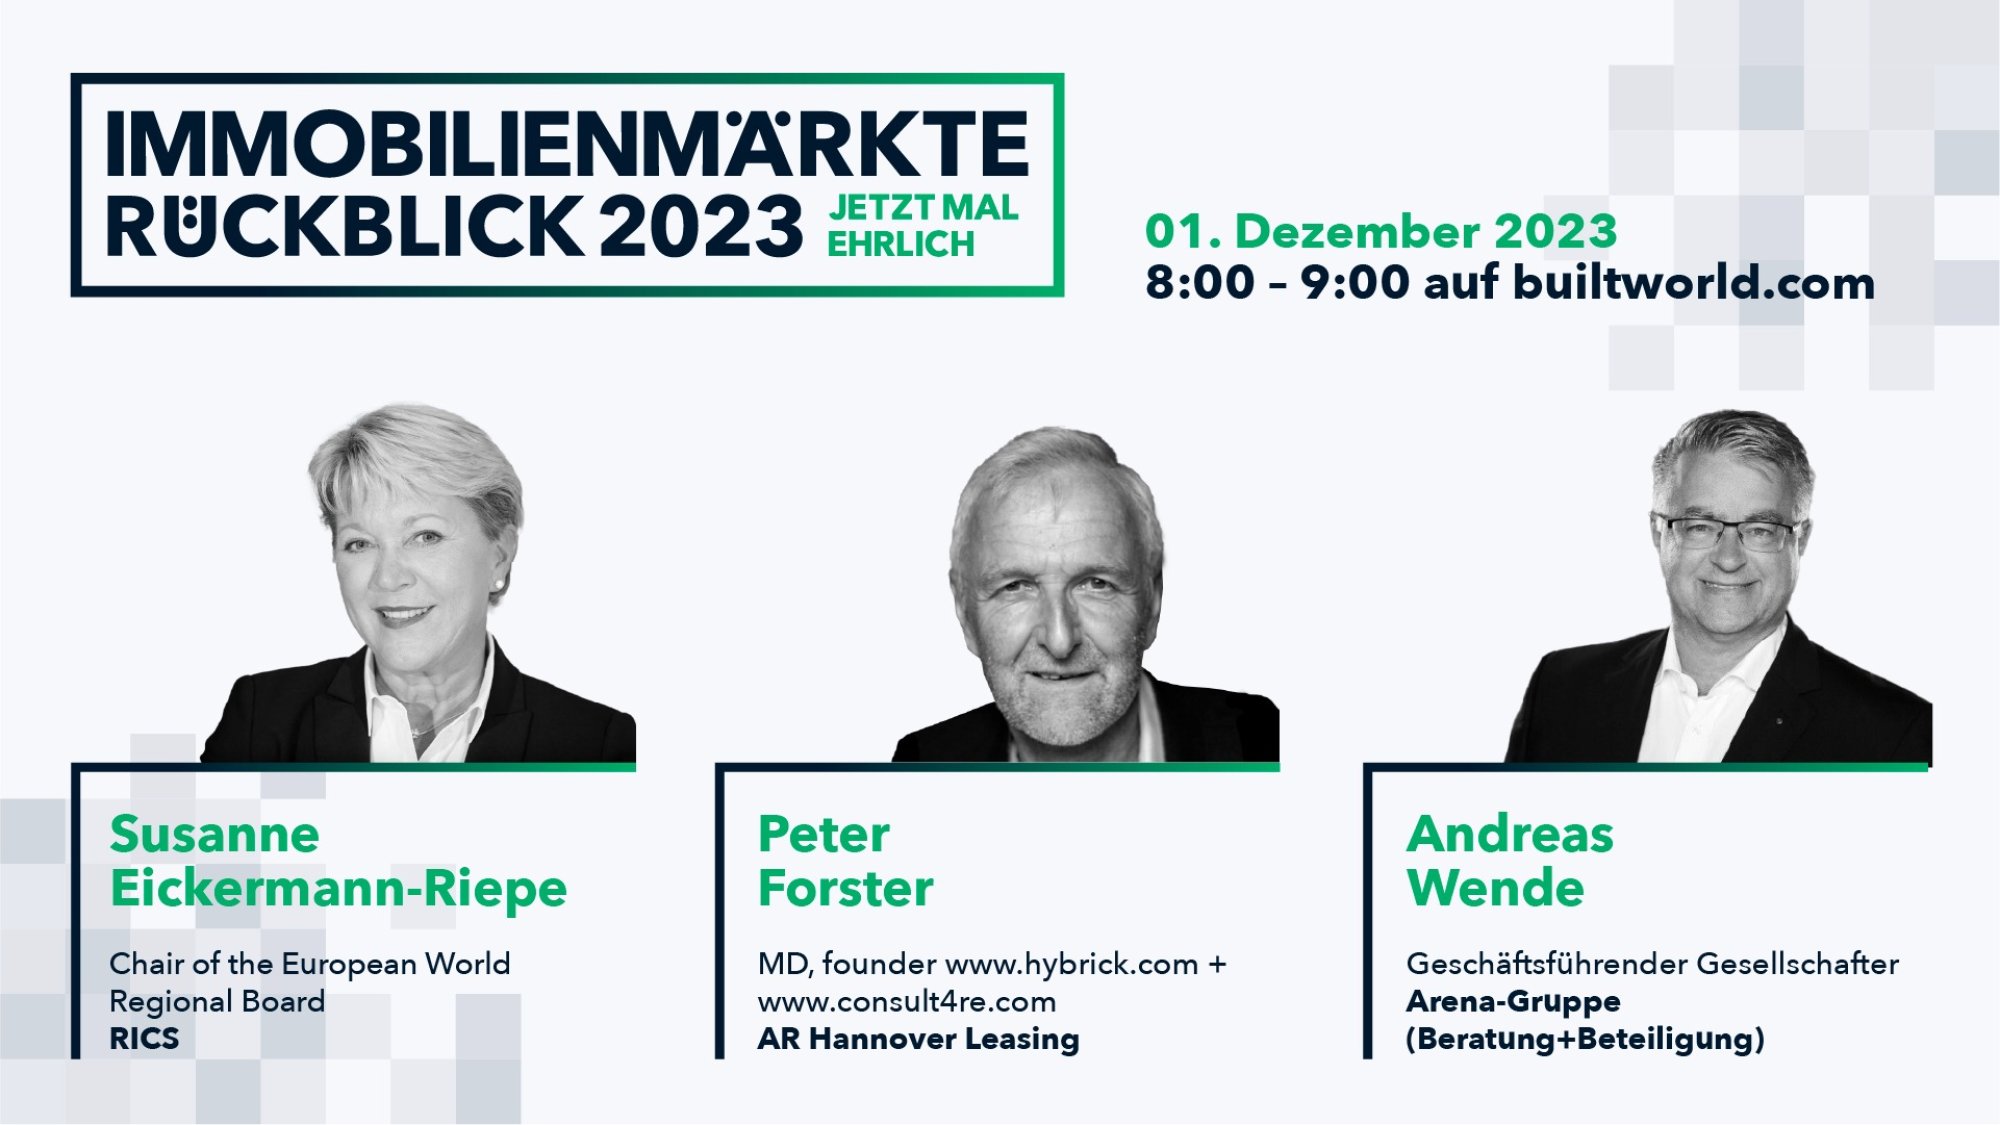 rueckblick-2023-immobilienmarkt